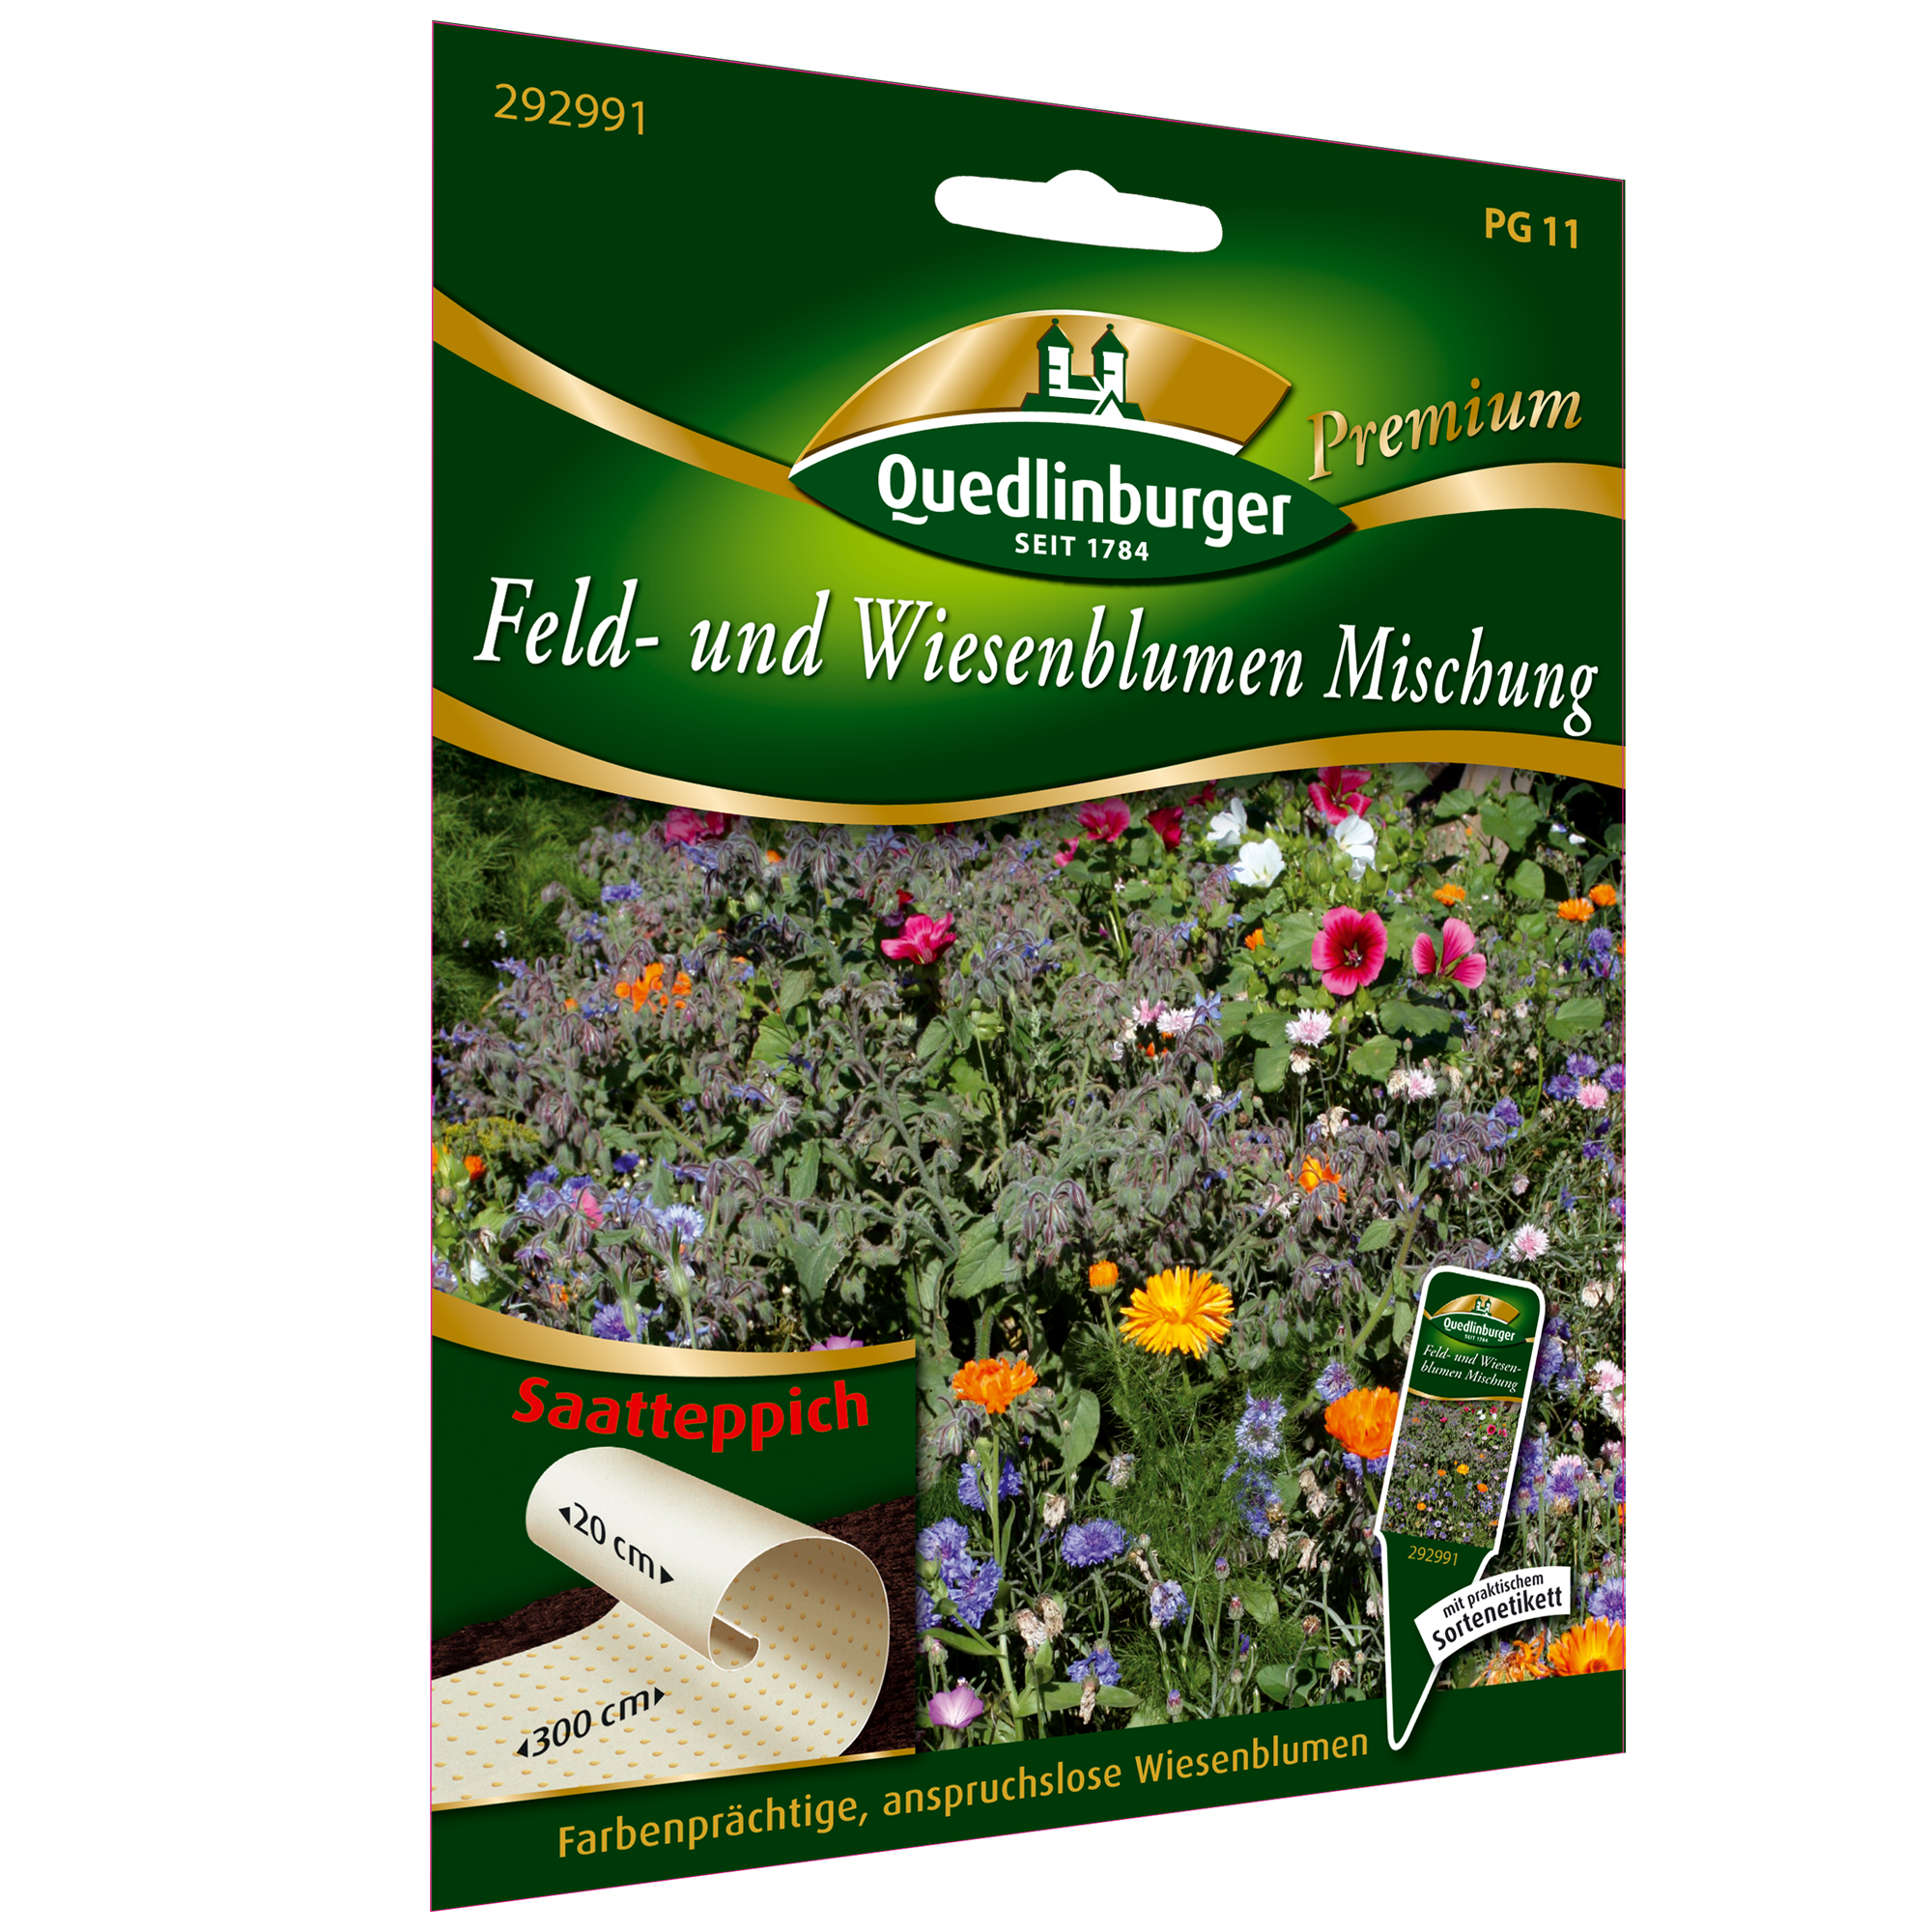 Blumenmischung 'Feld- und Wiesenmischung' Saatteppich + product picture